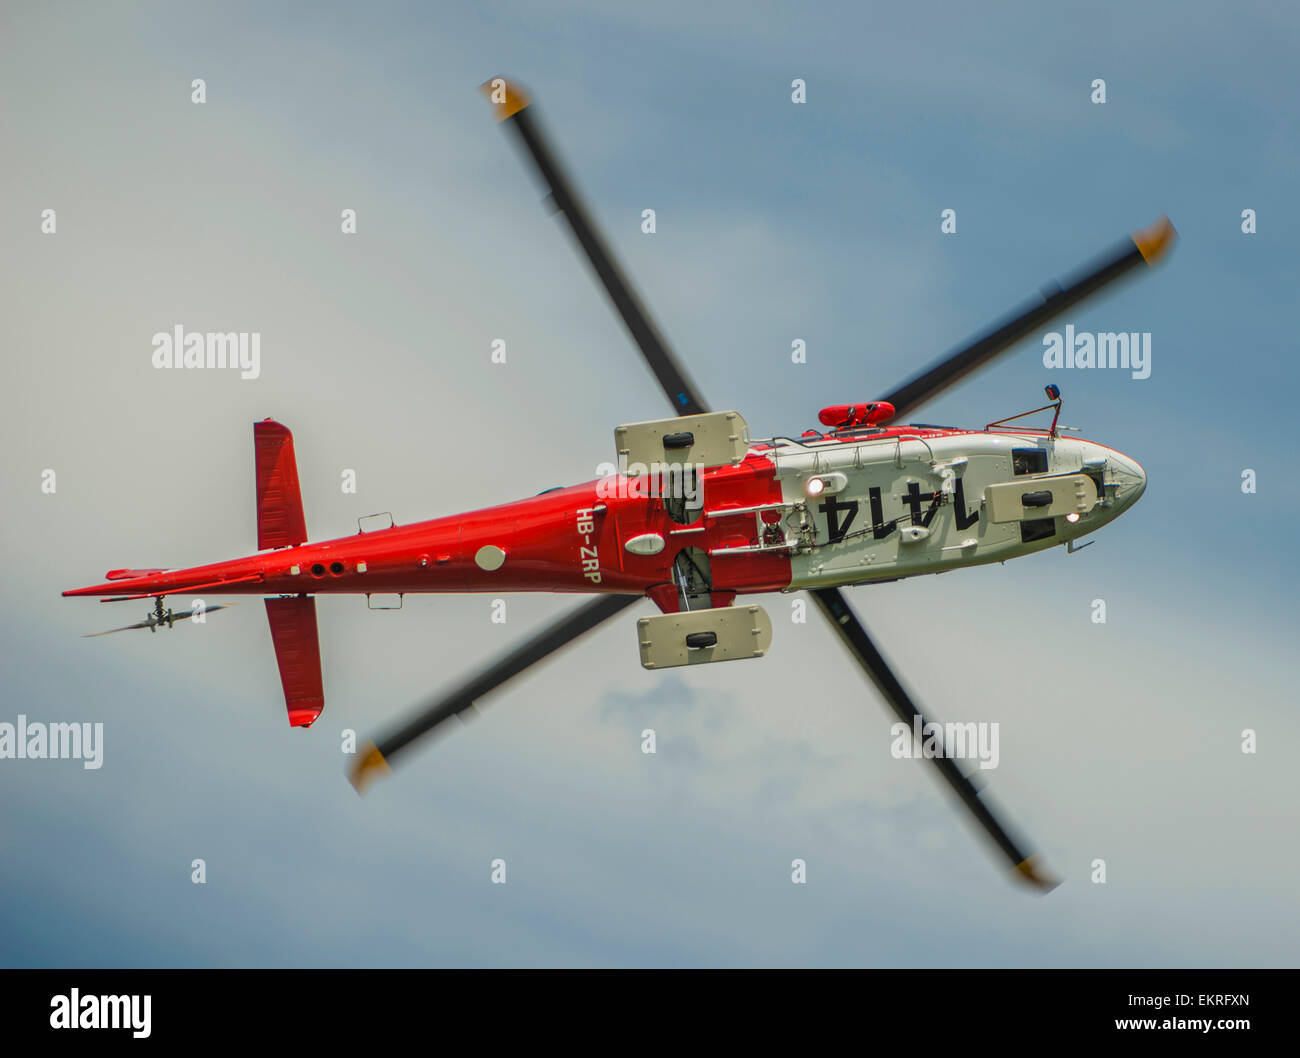 Niedrigen Winkel auf der Unterseite eines Hubschraubers in der Luft;  Locarno, Tessin, Schweiz Stockfotografie - Alamy